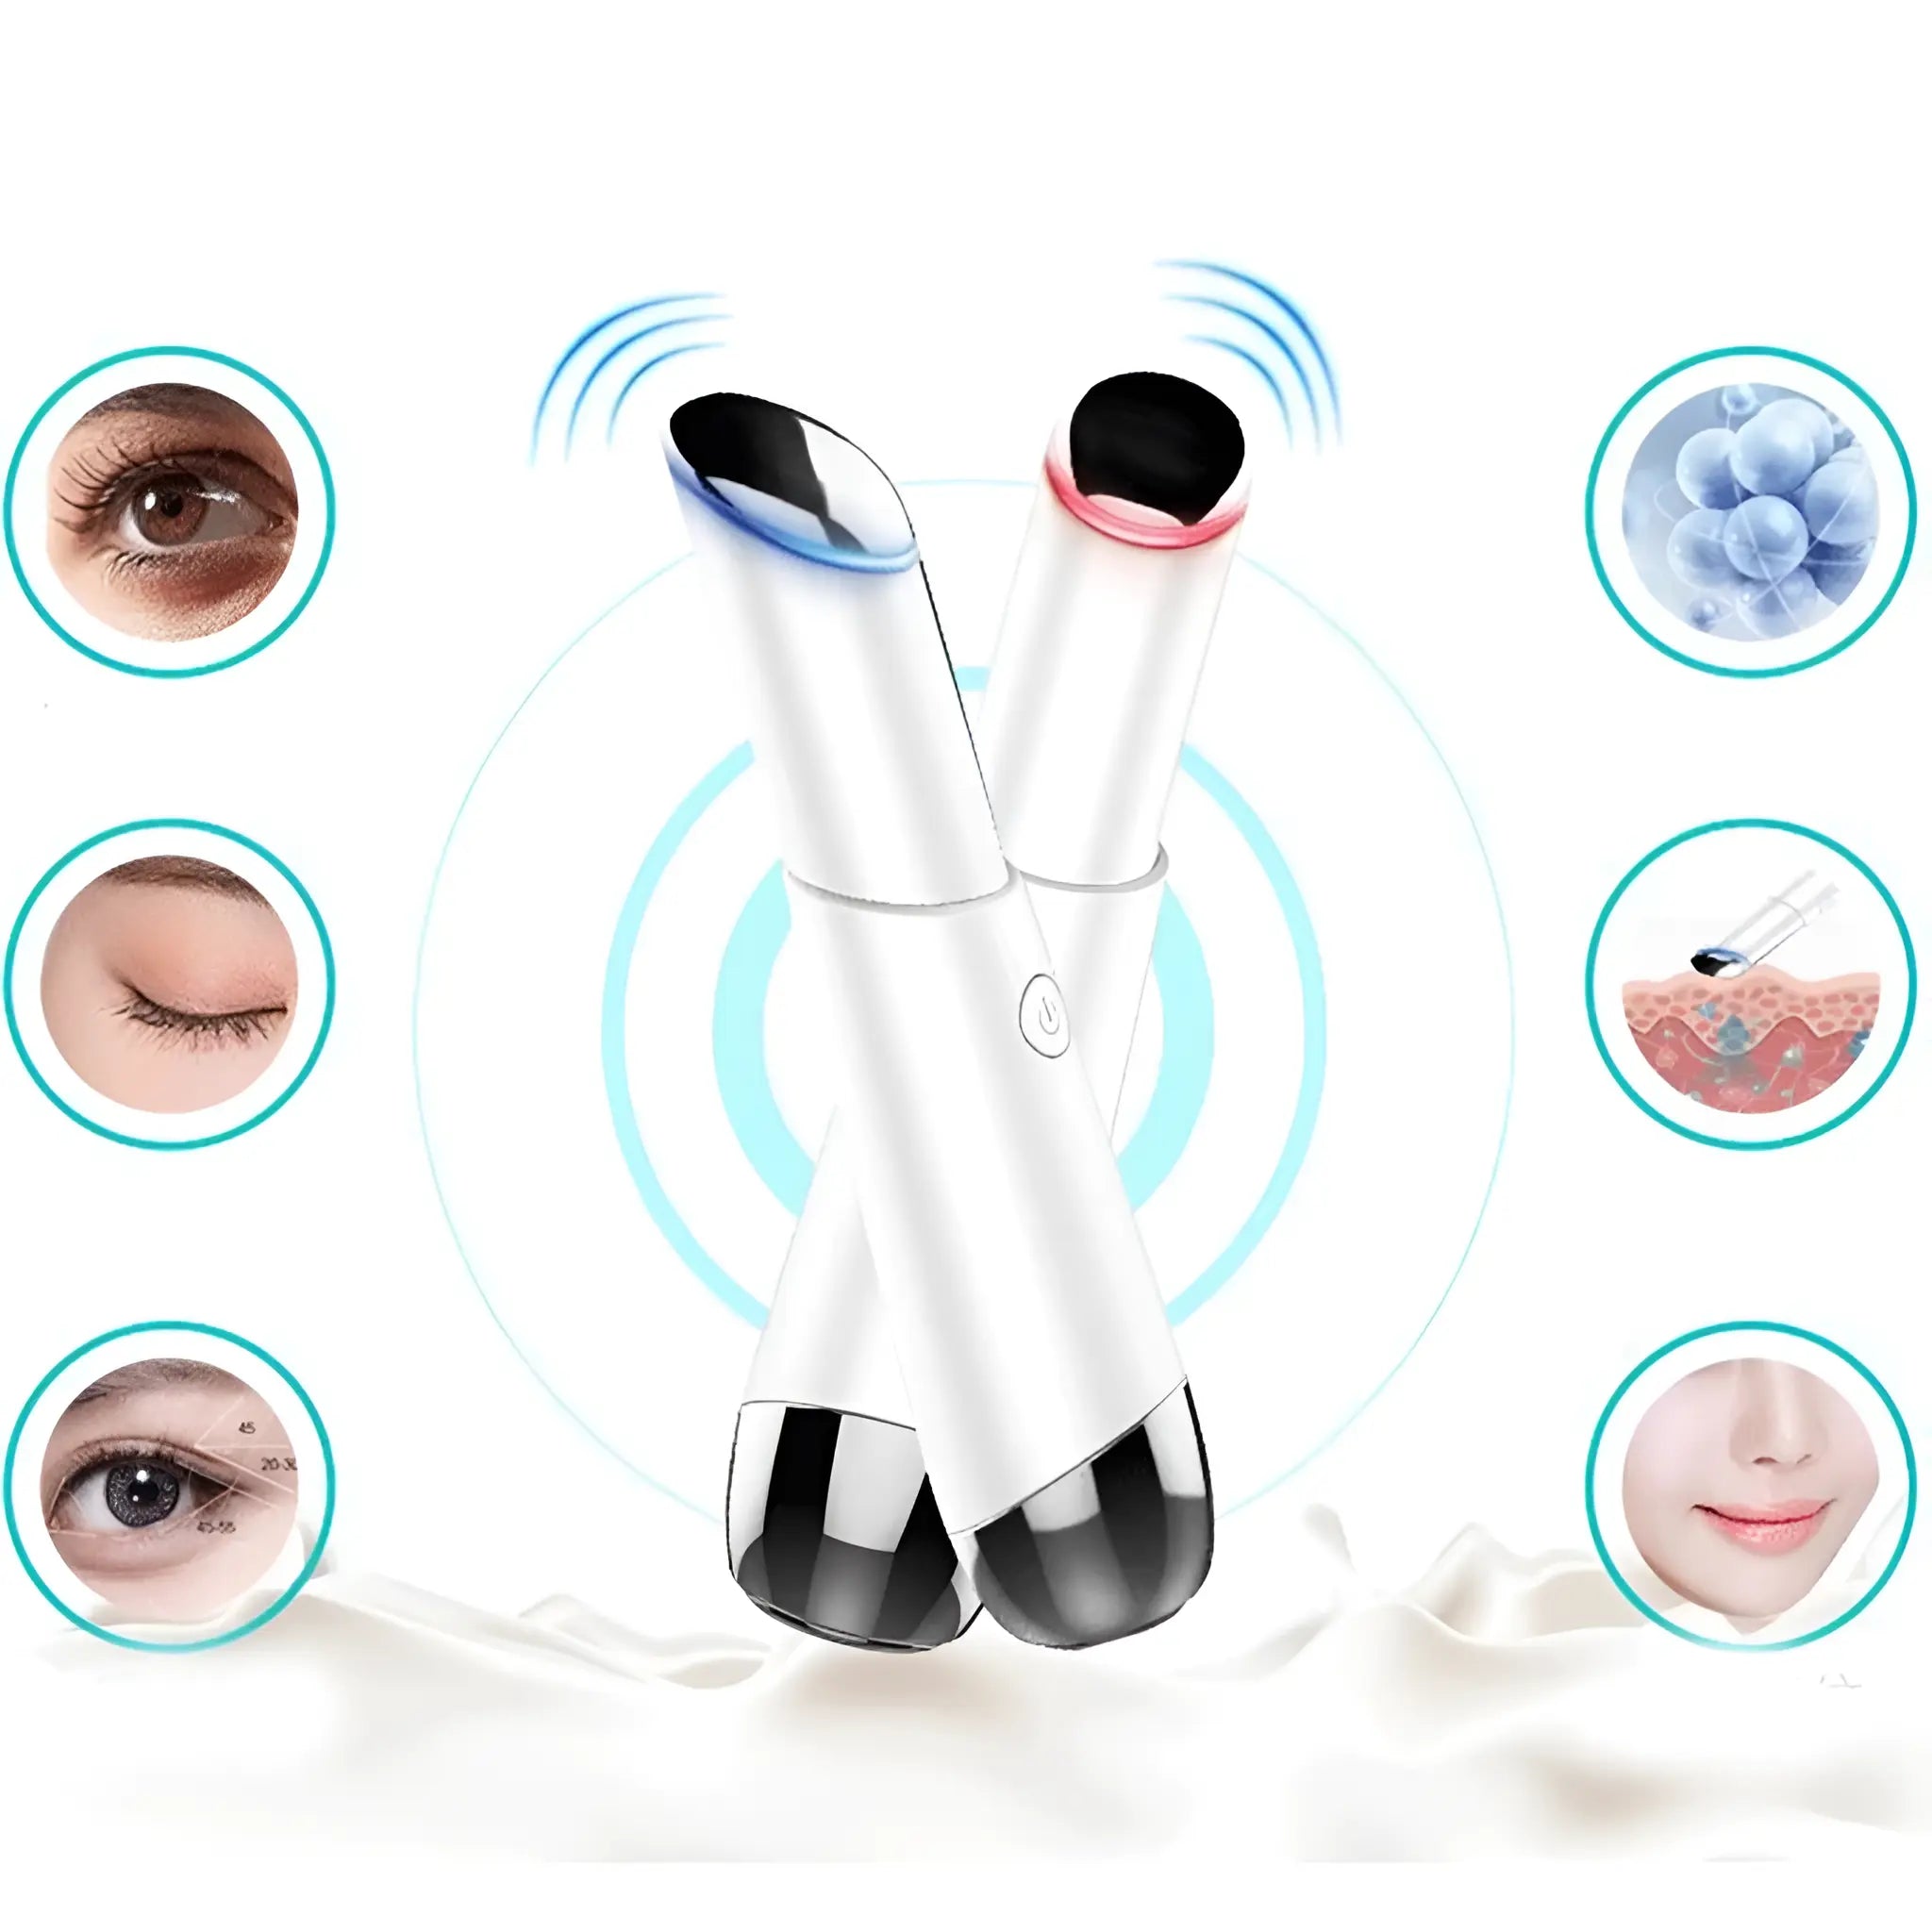 EyesAge Pro: Advanced Eye Massager for Youthful Radiance